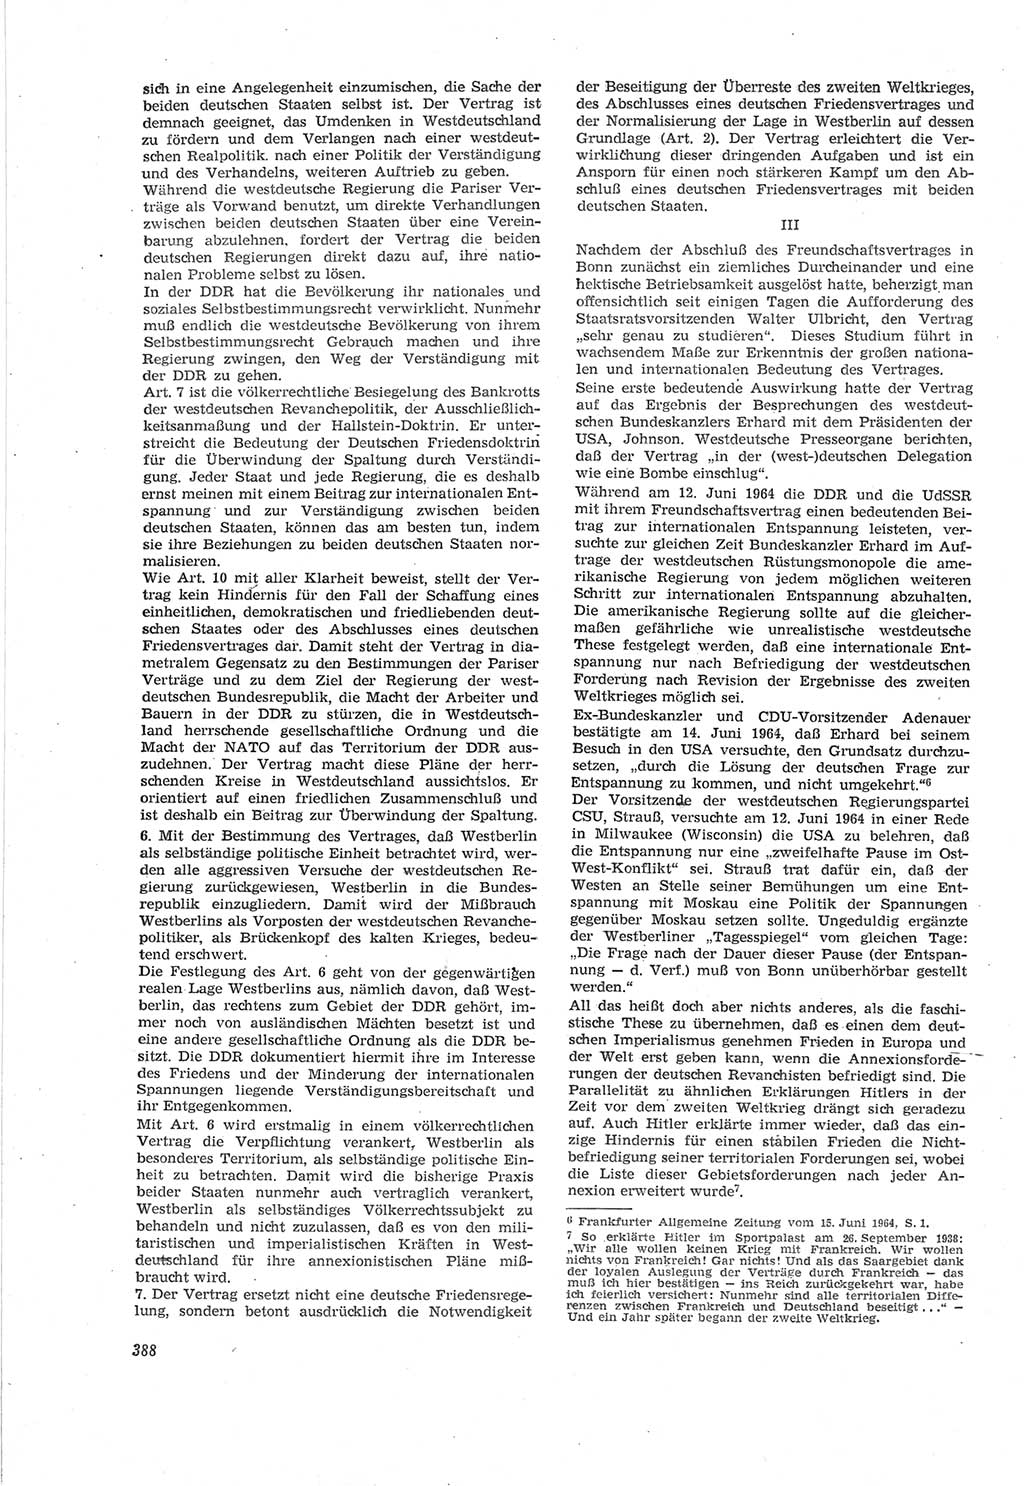 Neue Justiz (NJ), Zeitschrift für Recht und Rechtswissenschaft [Deutsche Demokratische Republik (DDR)], 18. Jahrgang 1964, Seite 388 (NJ DDR 1964, S. 388)